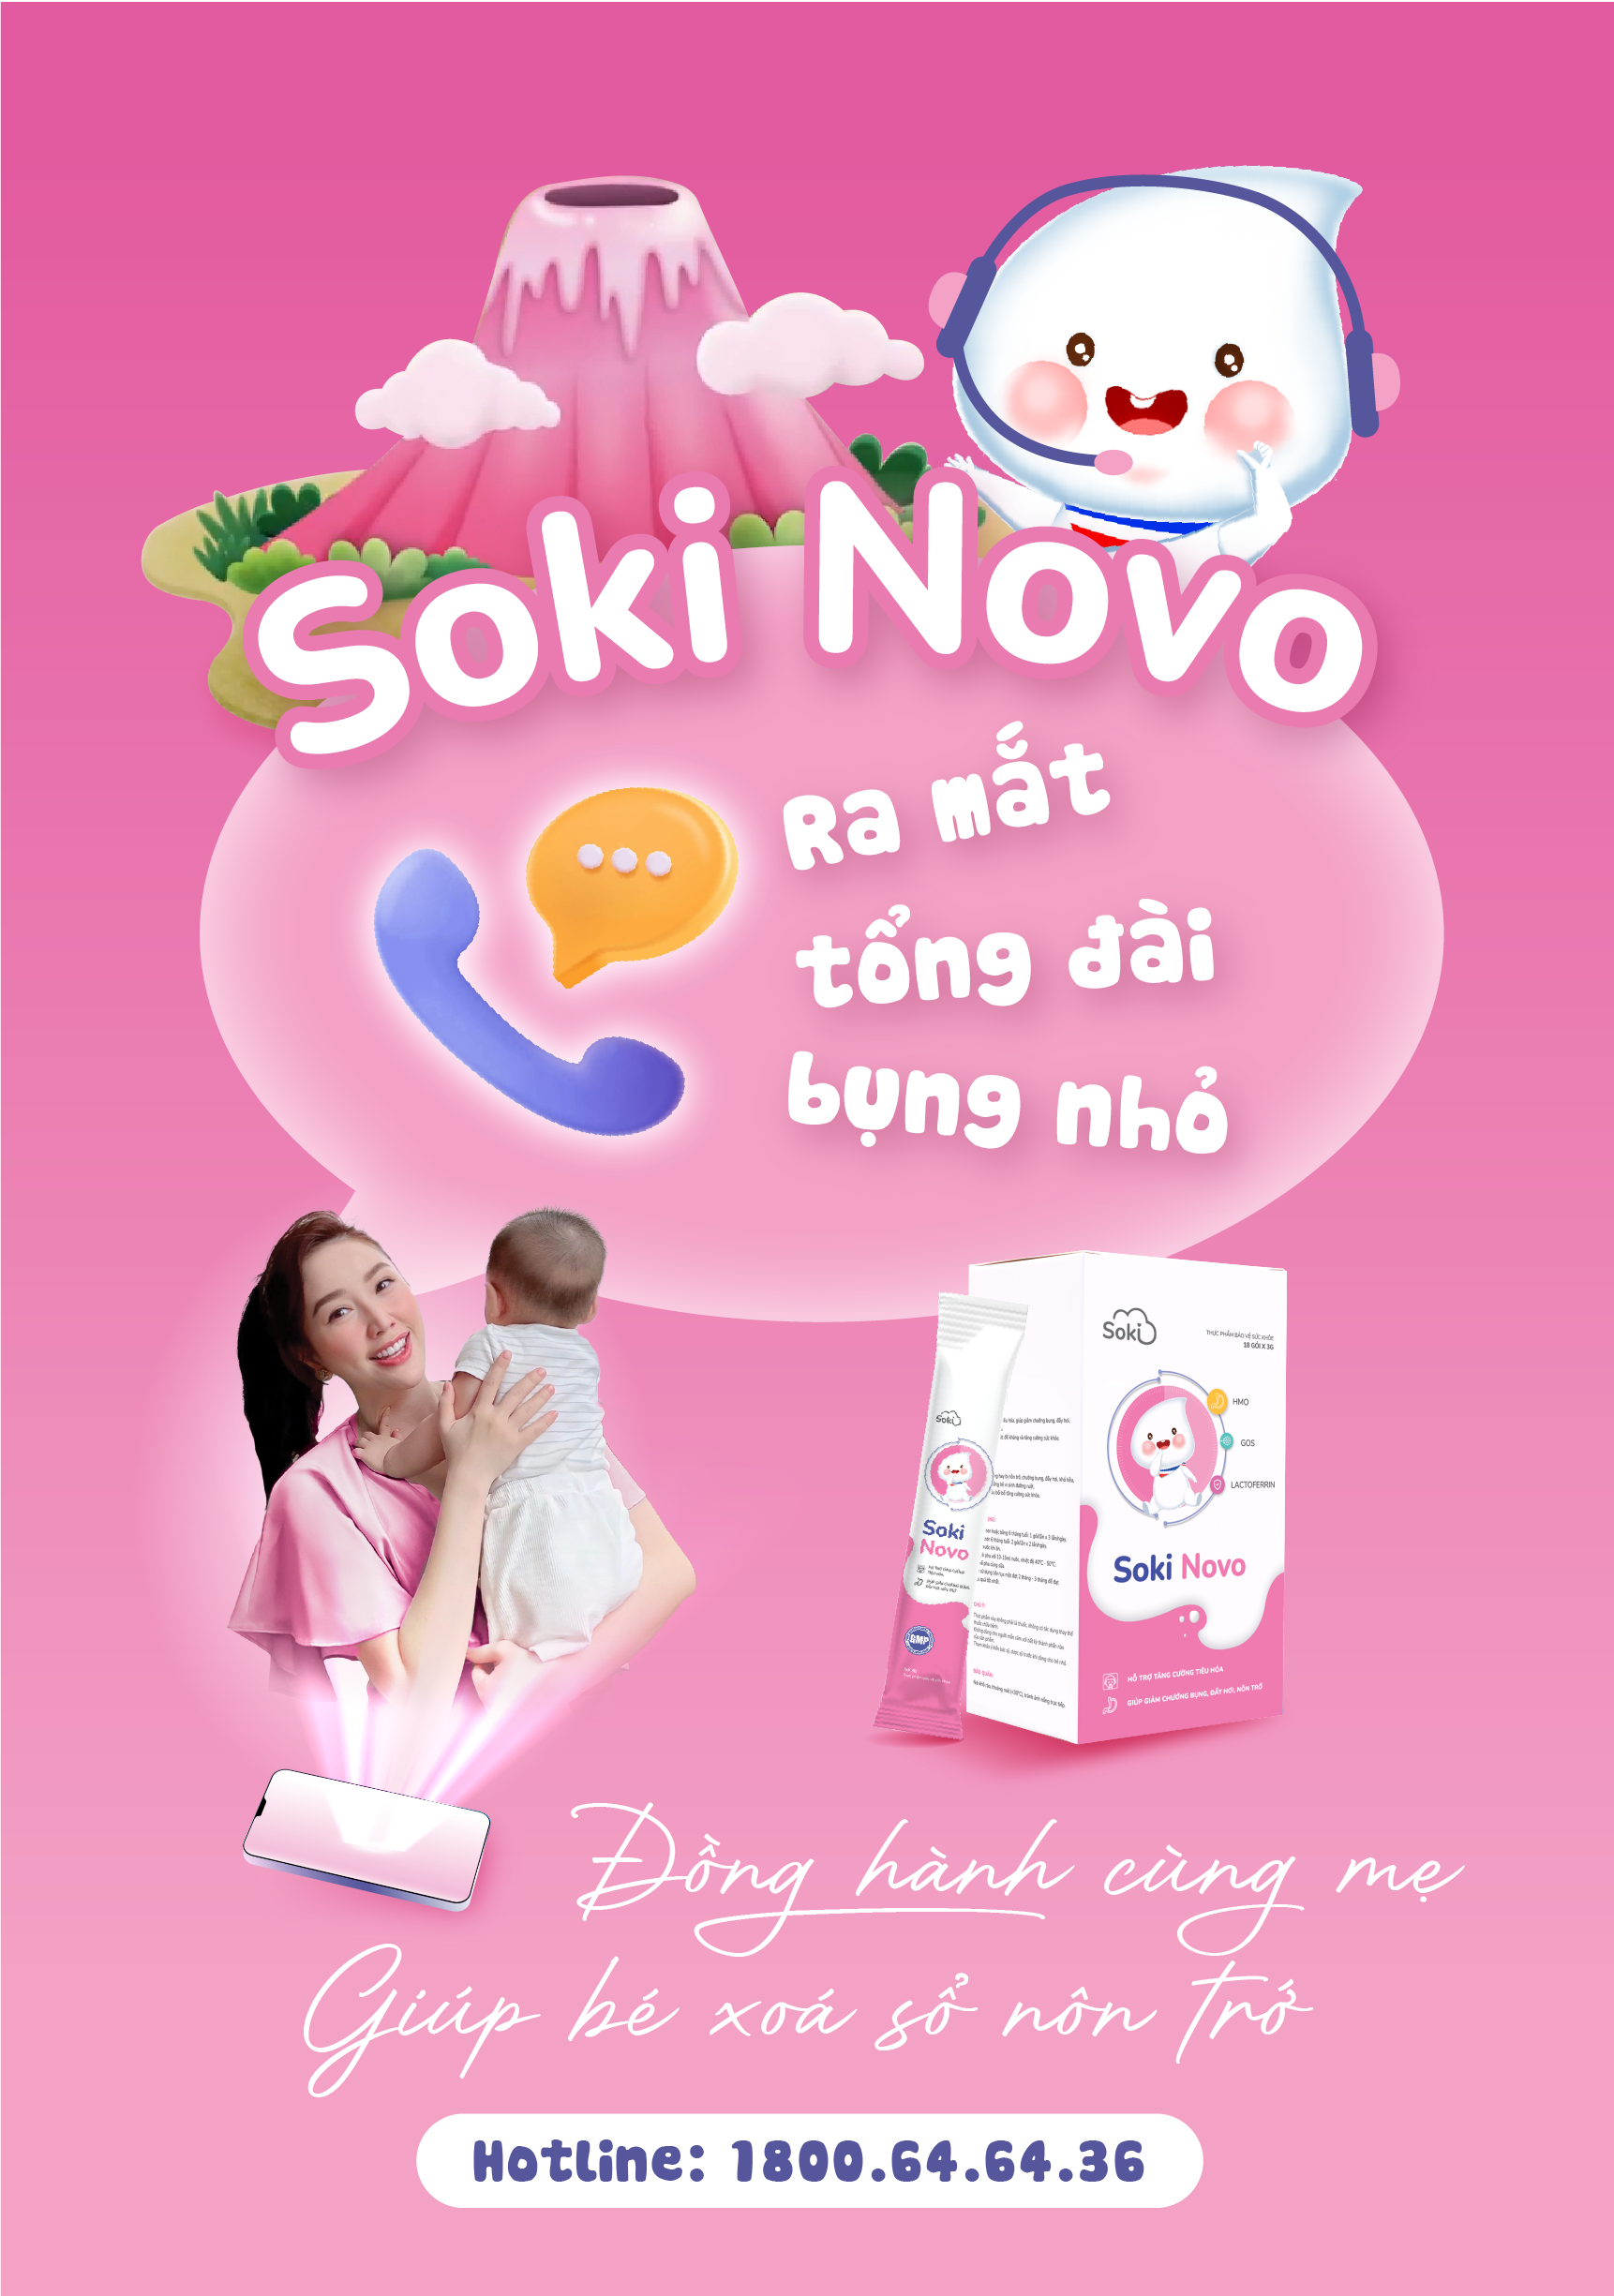 Soki Novo ra mắt tổng đài bụng nhỏ - Đồng hành cùng mẹ giúp con xoá sổ nôn trớ